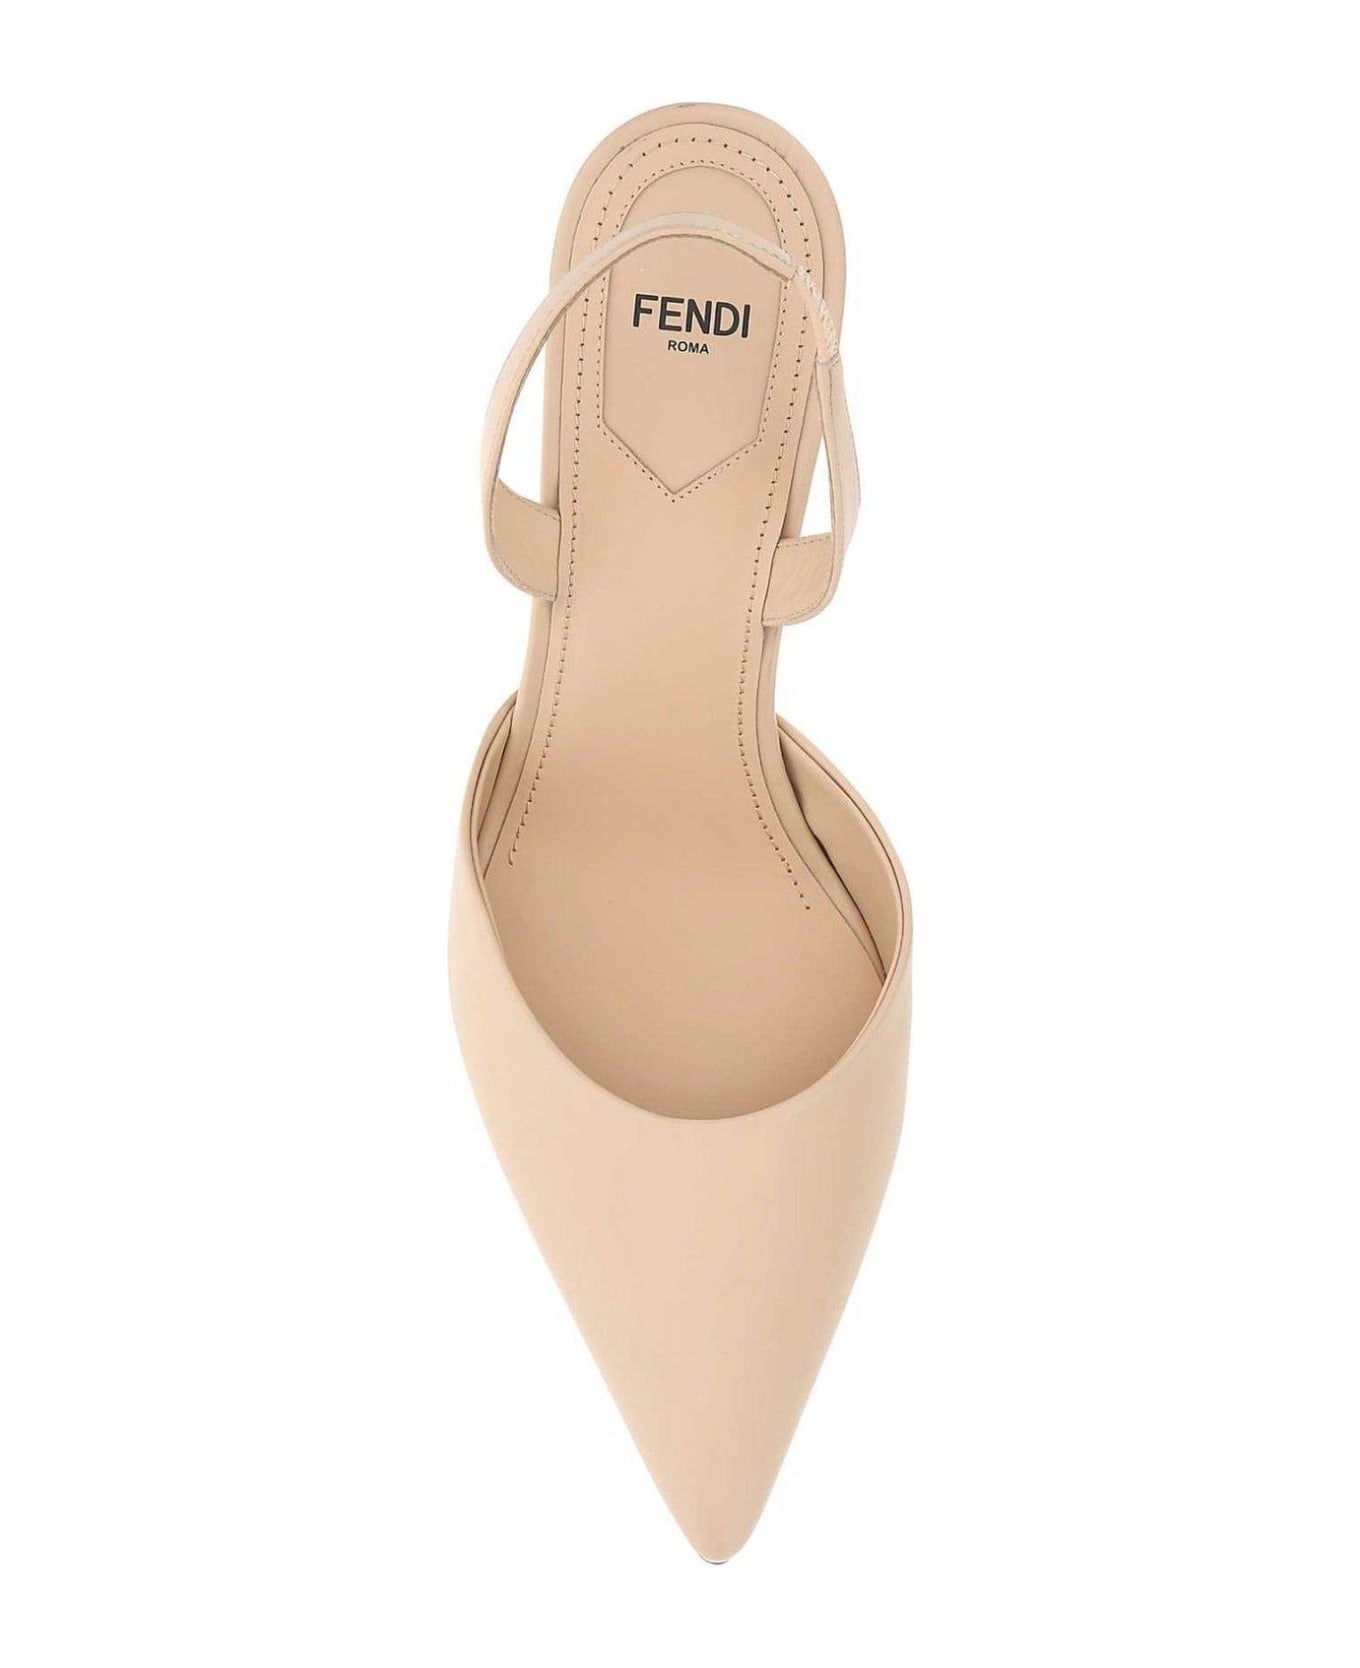 Fendi F-shaped Sculpted Heel Pumps - Powder